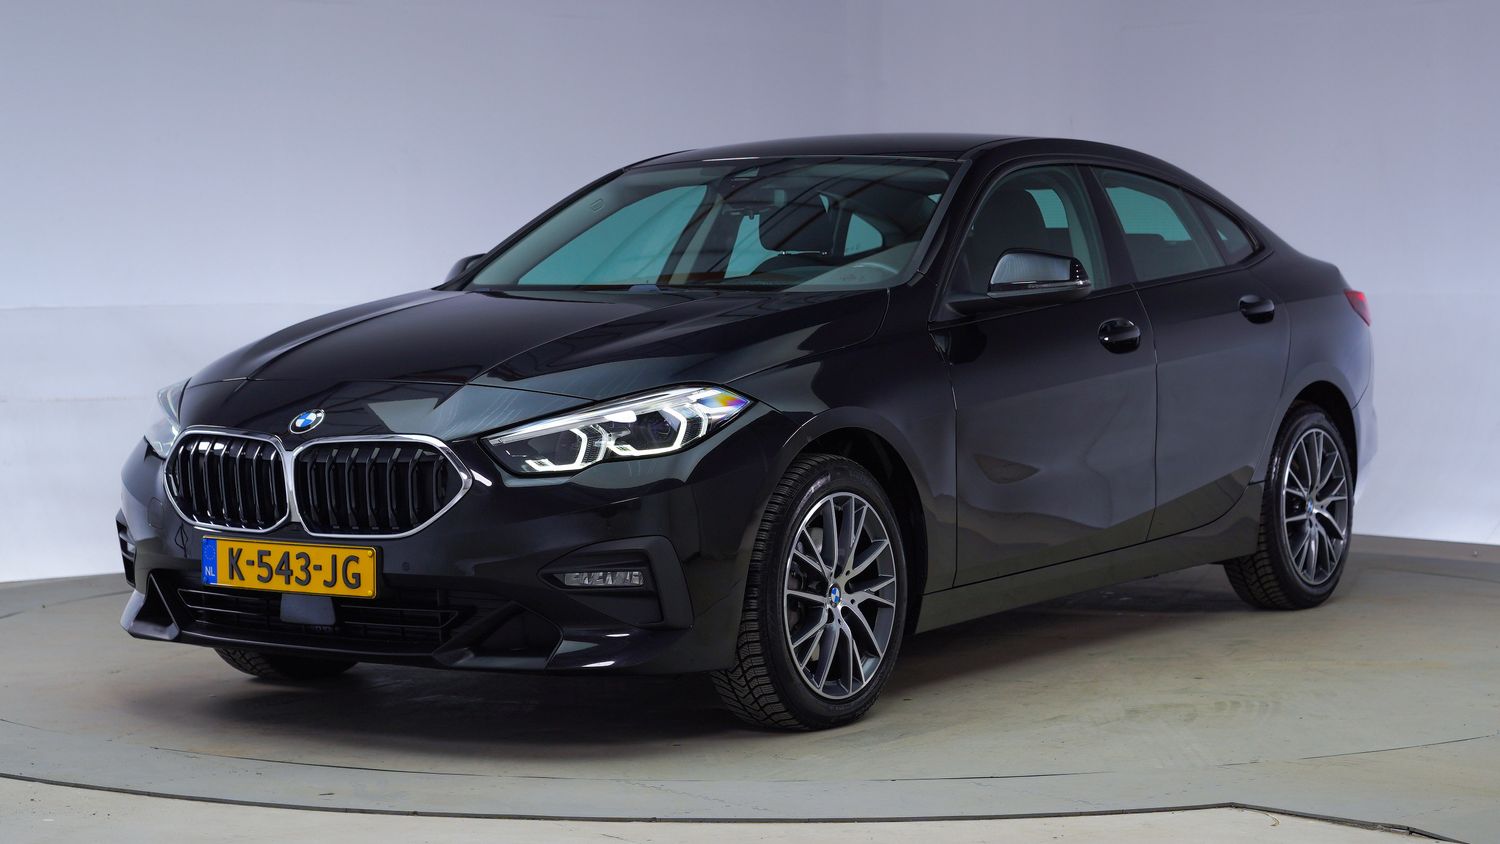 BMW 2-serie Sedan 2021 K-543-JG 1